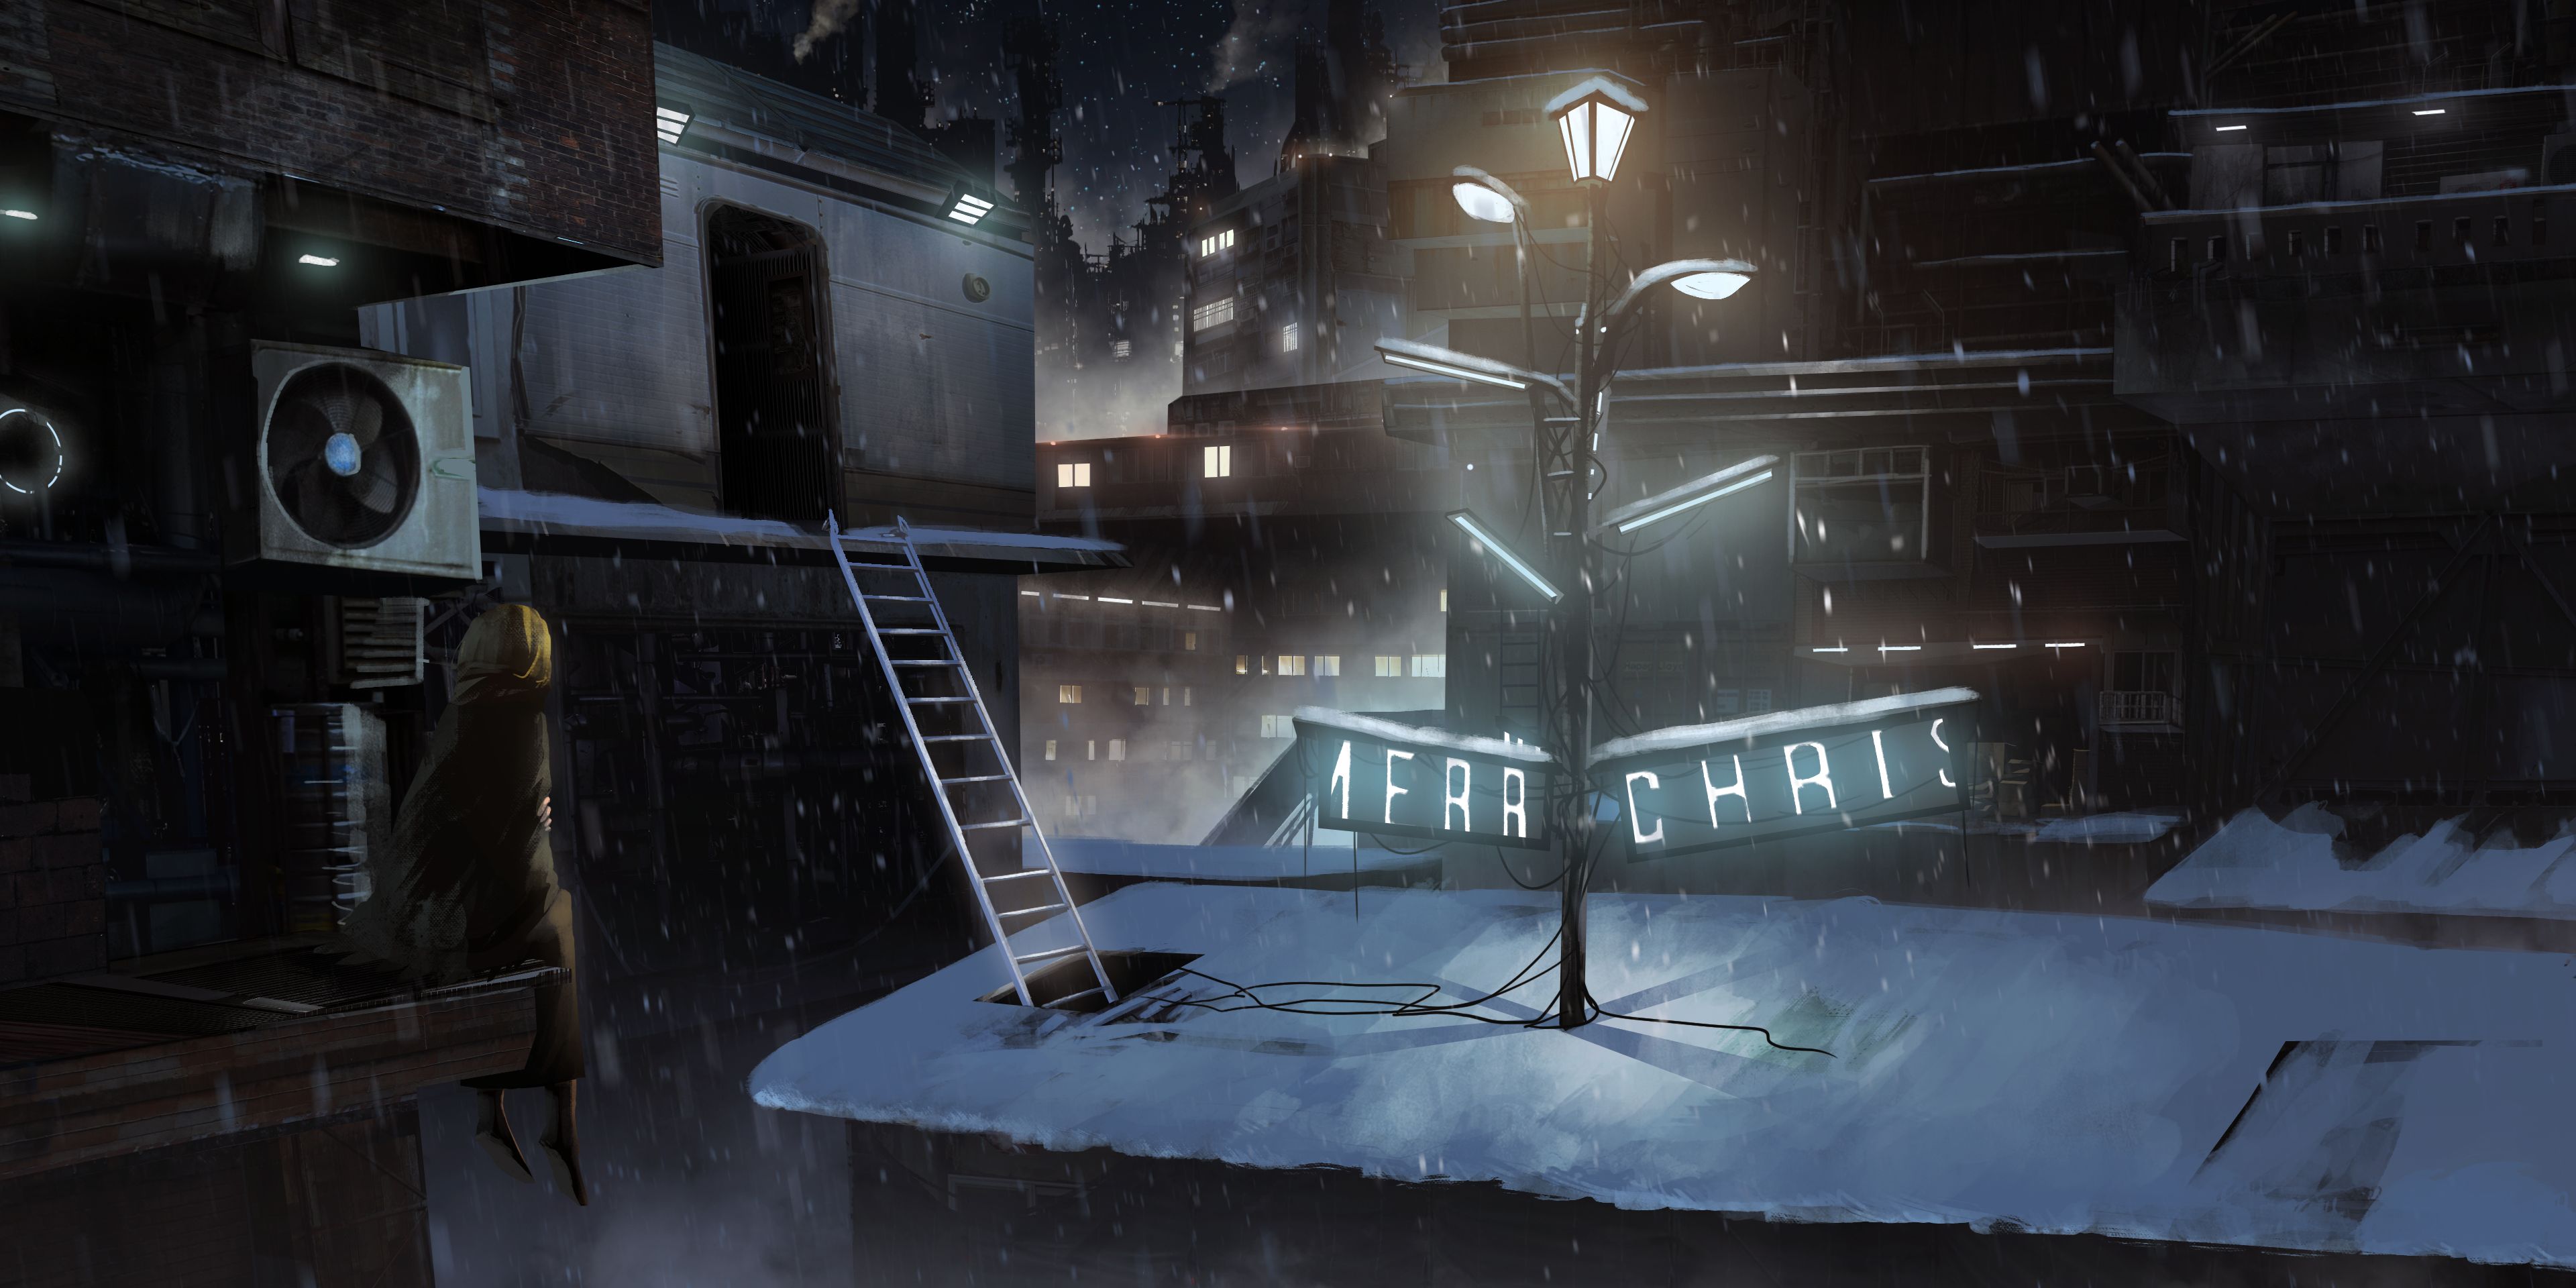 Скачать обои бесплатно Аниме, Снег, Город, Рождество, Оригинал картинка на рабочий стол ПК